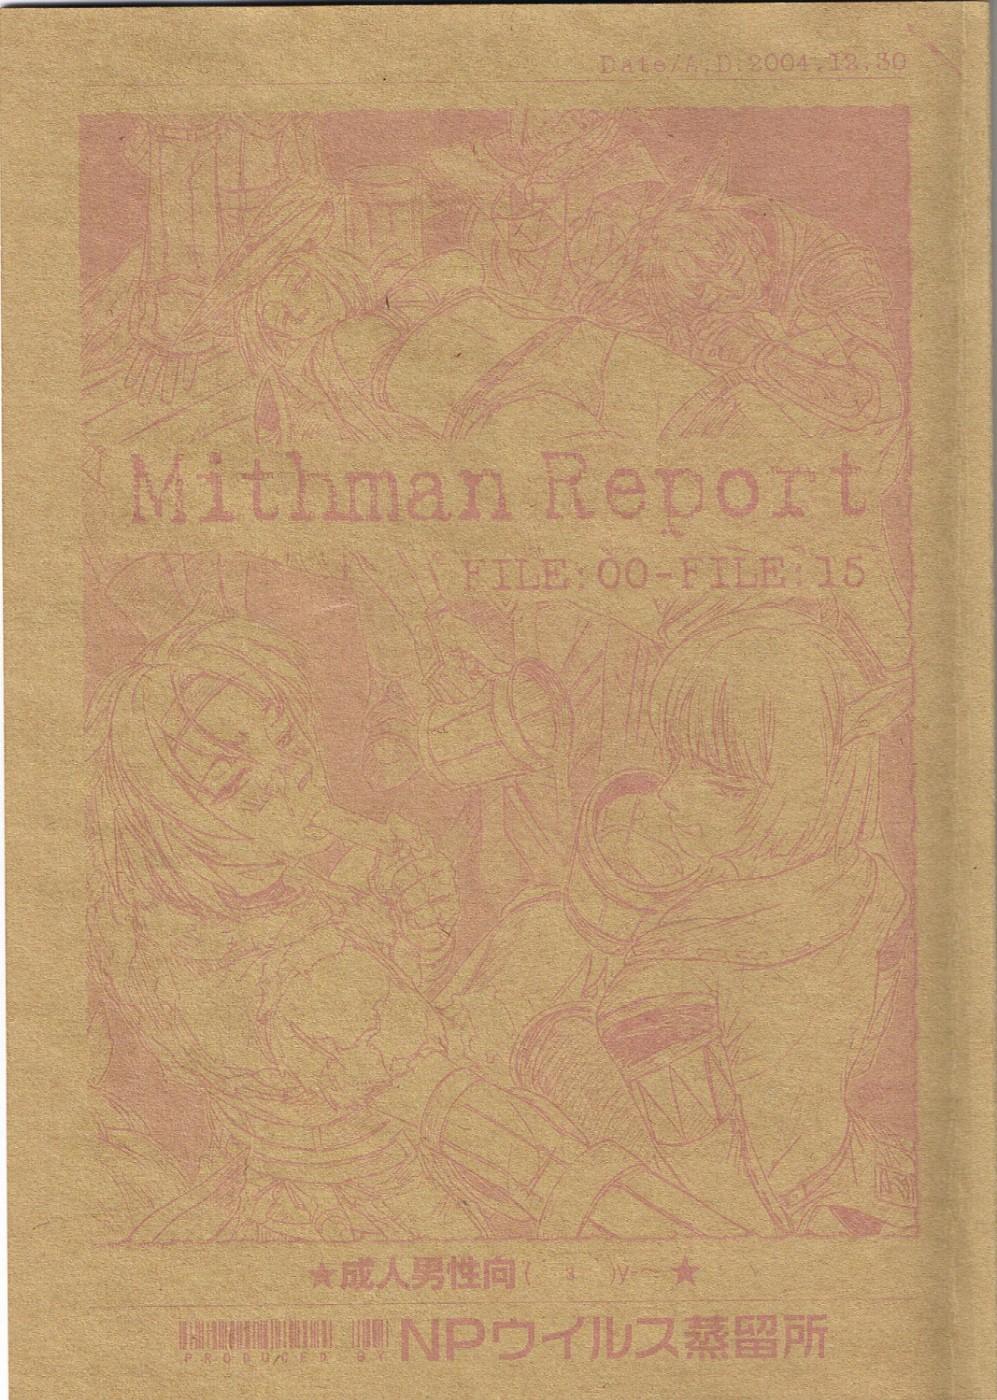 Mithman Report FILE:00-FILE:15 0